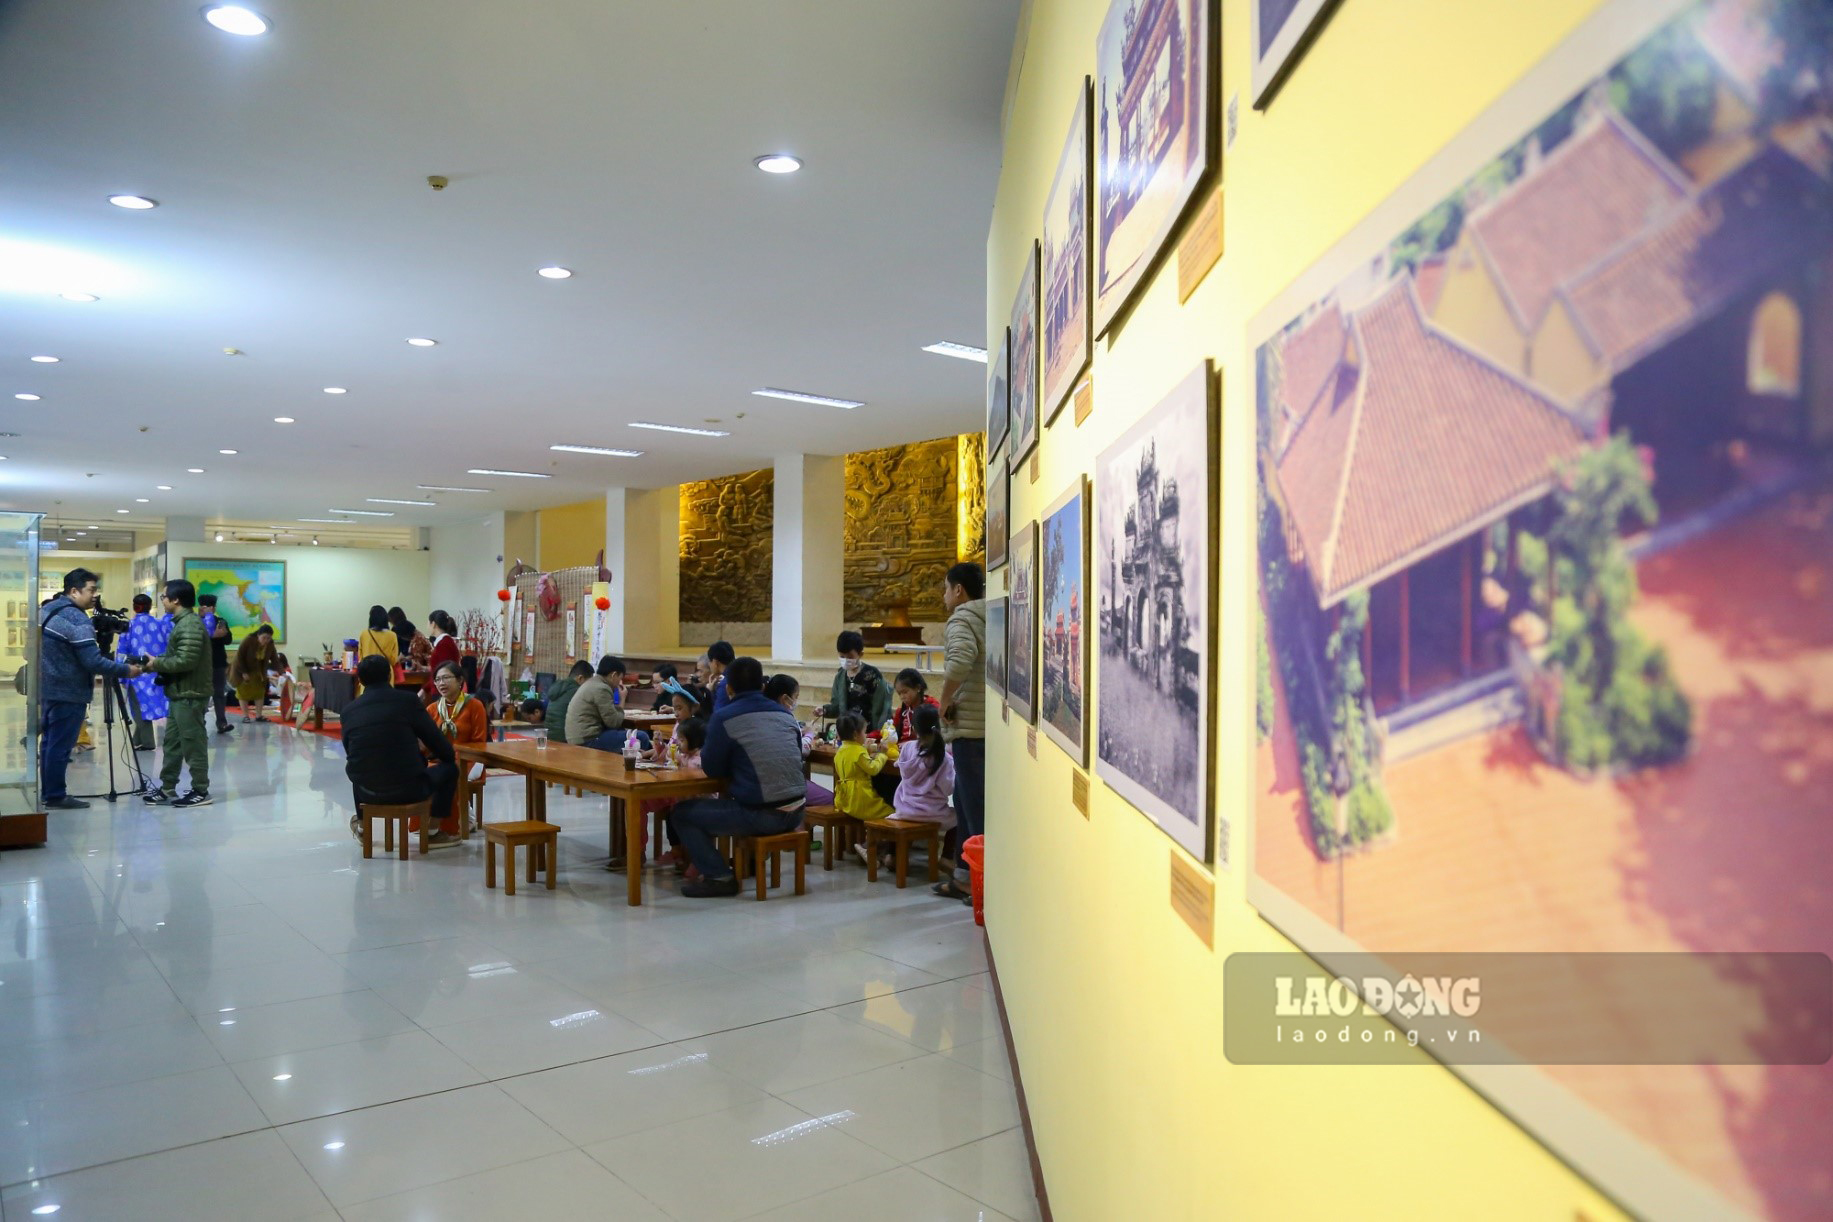 “Trẩy hội đầu xuân” được tổ chức tại tiền sảnh Bảo tàng Đà Nẵng vào thời gian 8h30 – 11h30 trong 2 ngày 28.1 đến 29.1(Mùng 7 và Mùng 8 Tết  m lịch).